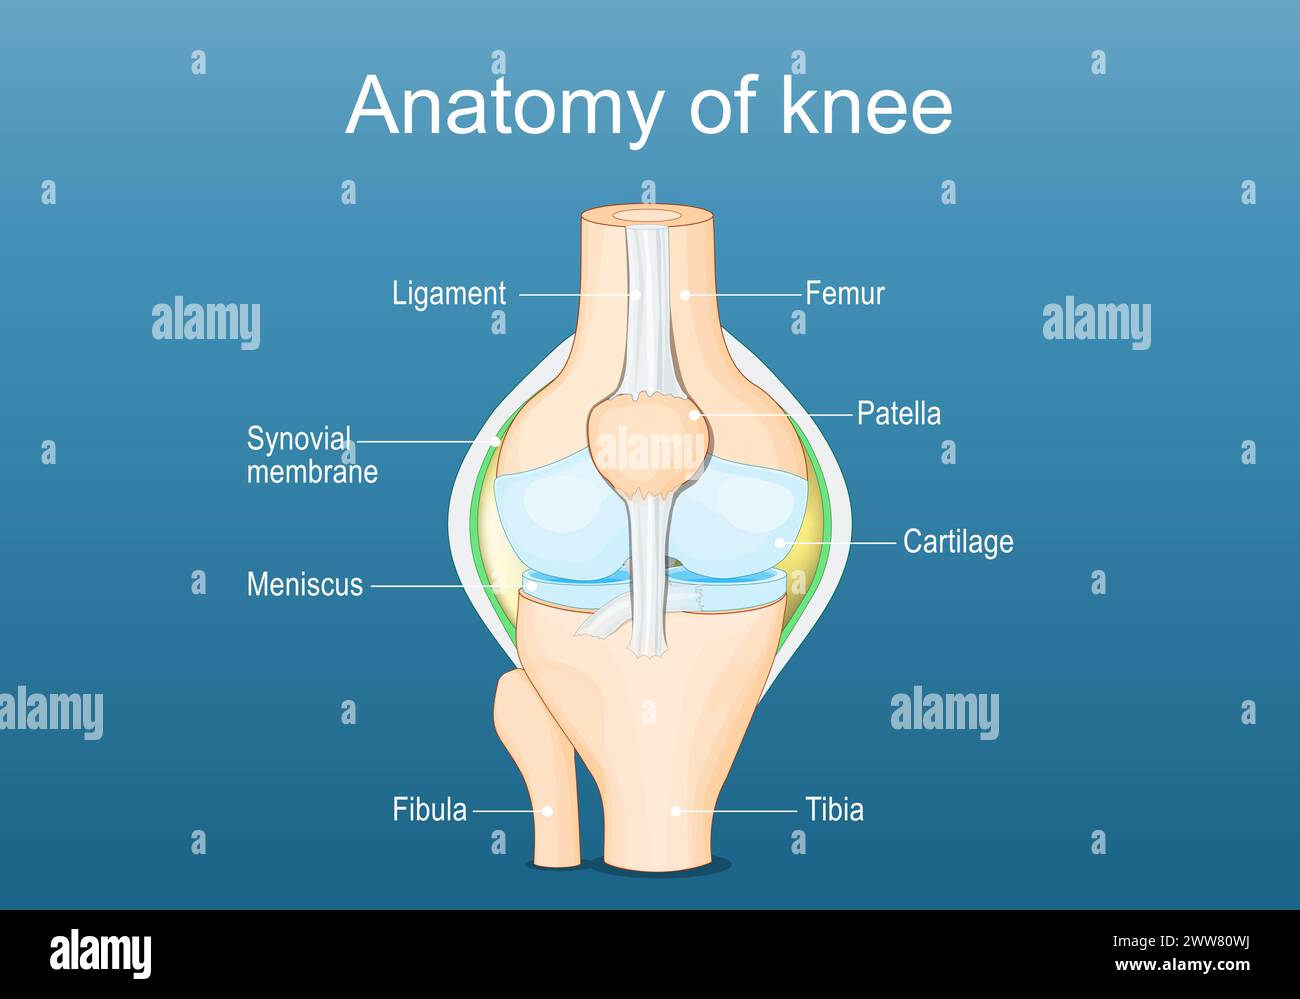 Anatomie de l'articulation du genou. Étiqueté de tous les os. Illustration vectorielle plate isométrique Illustration de Vecteur